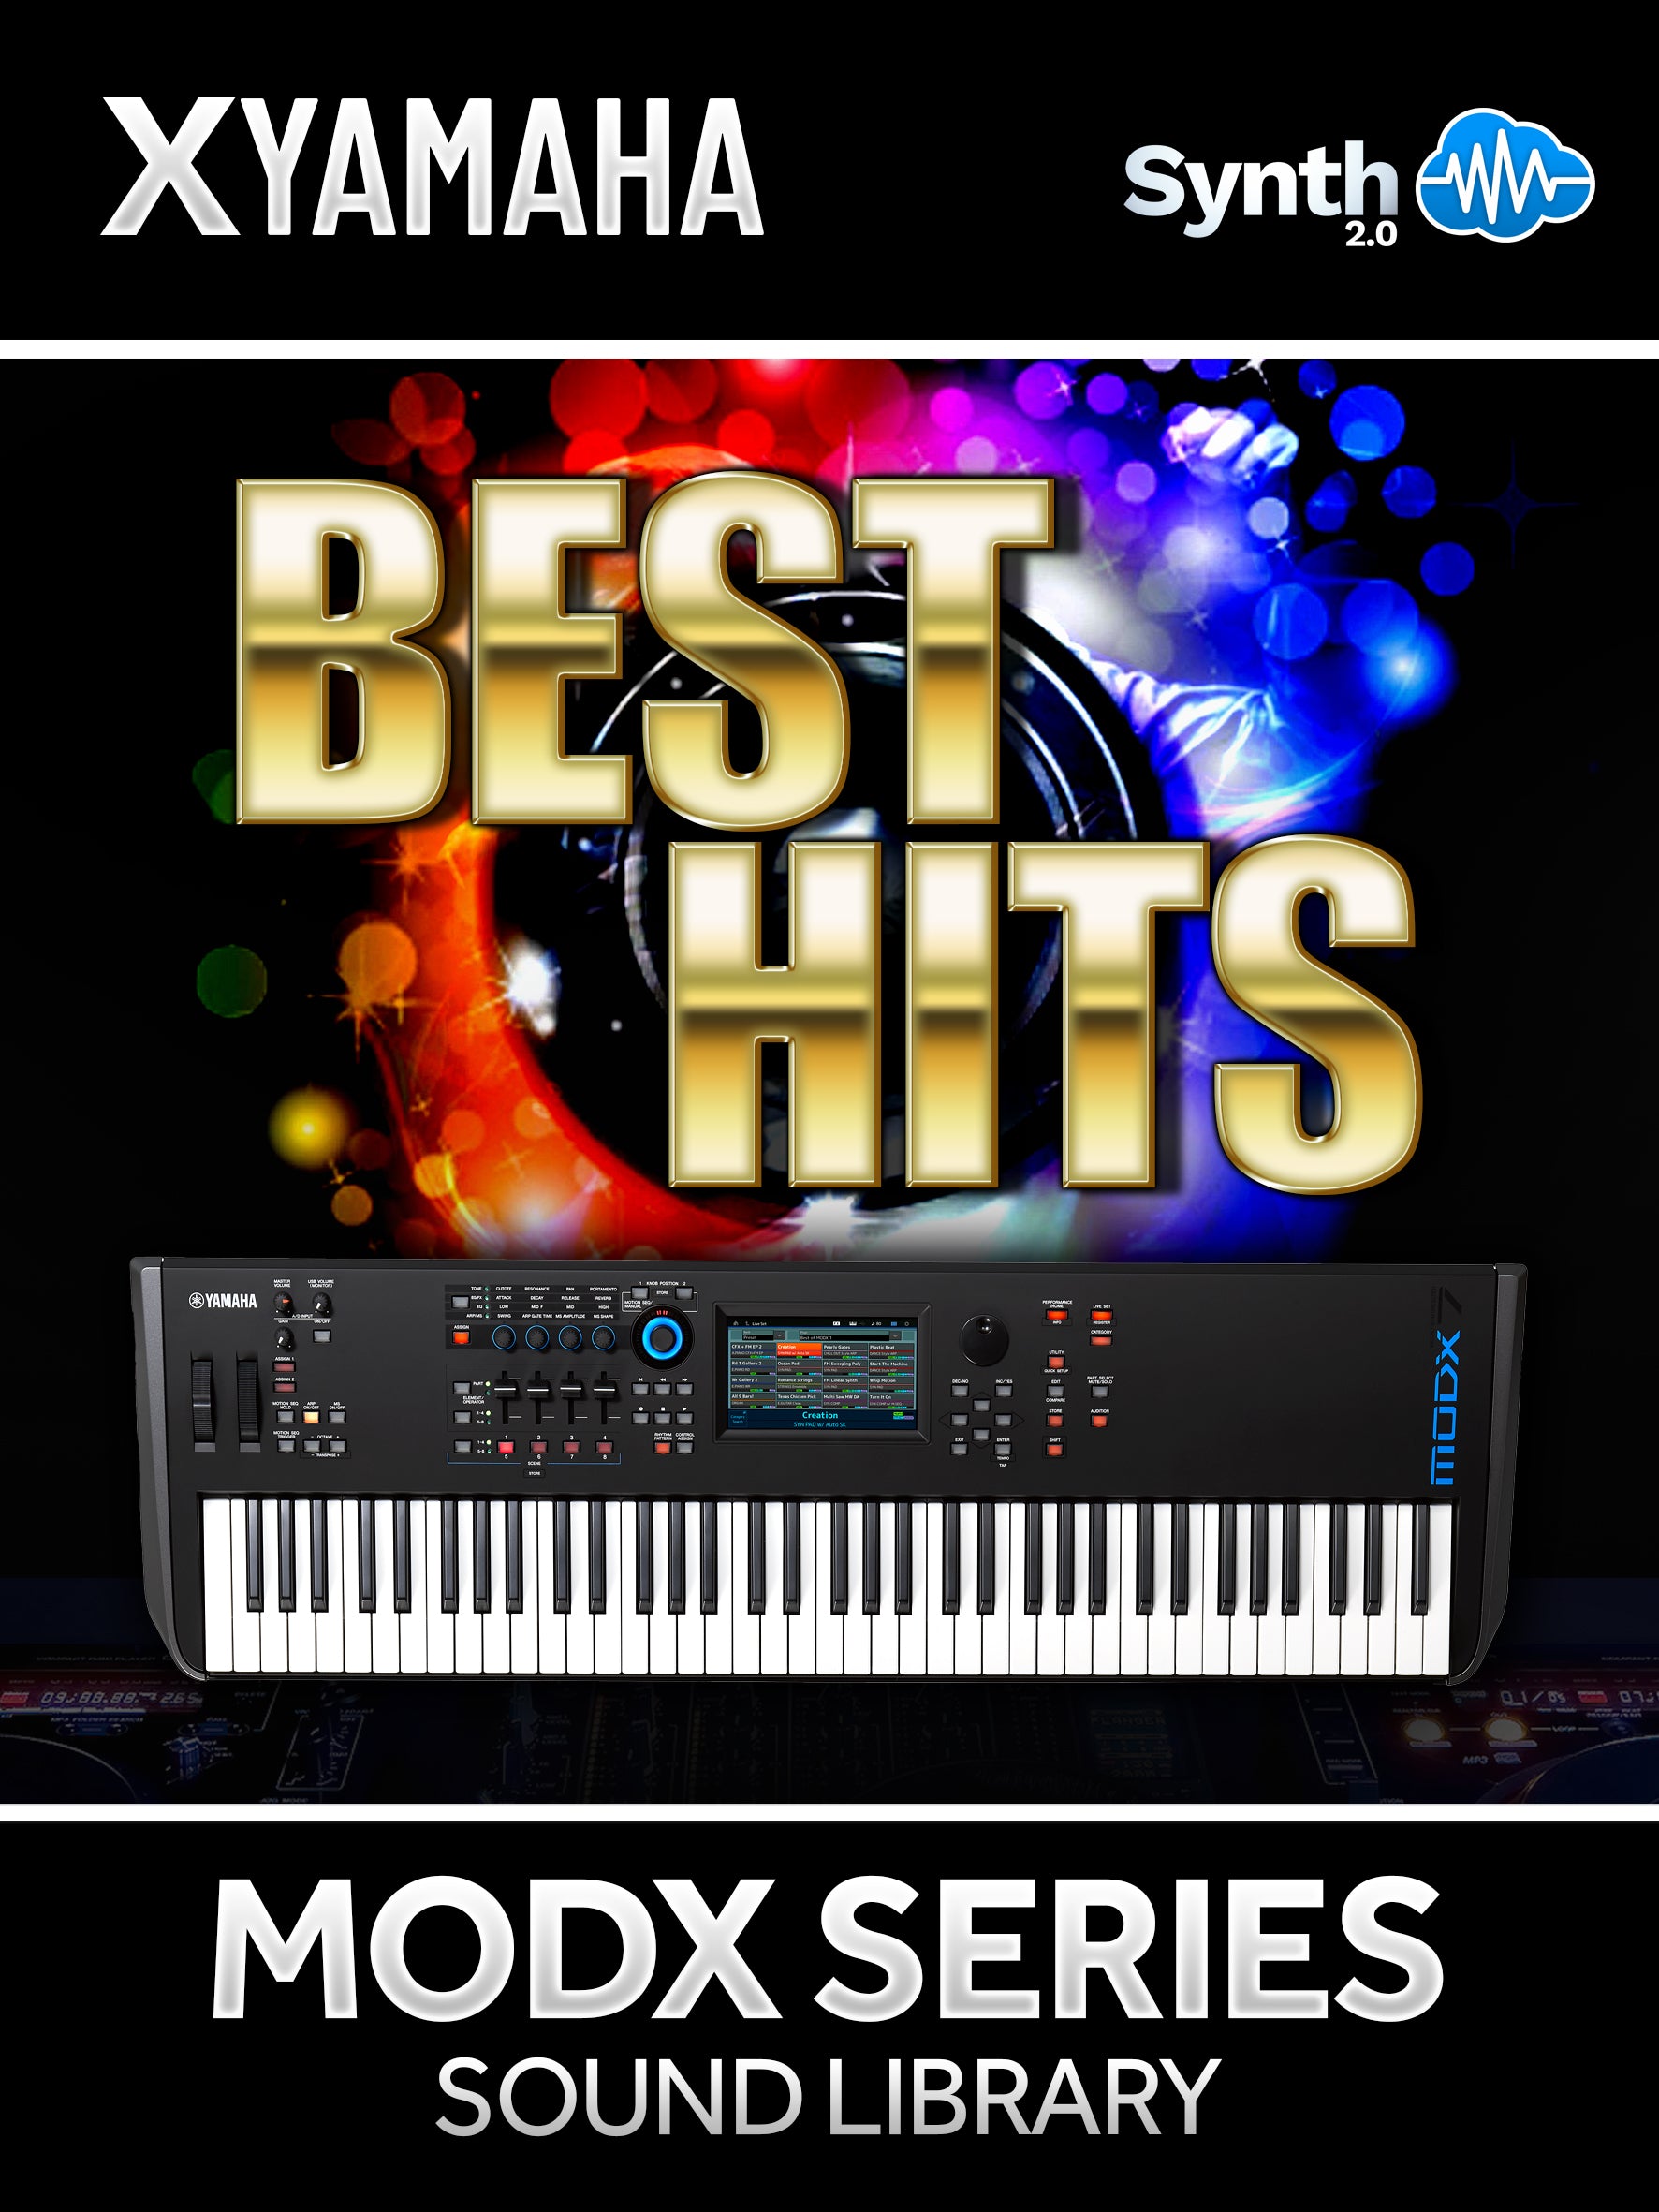 SCL077 - ( Bundle ) - Best Hits + Dance Hits - Yamaha MODX / MODX+